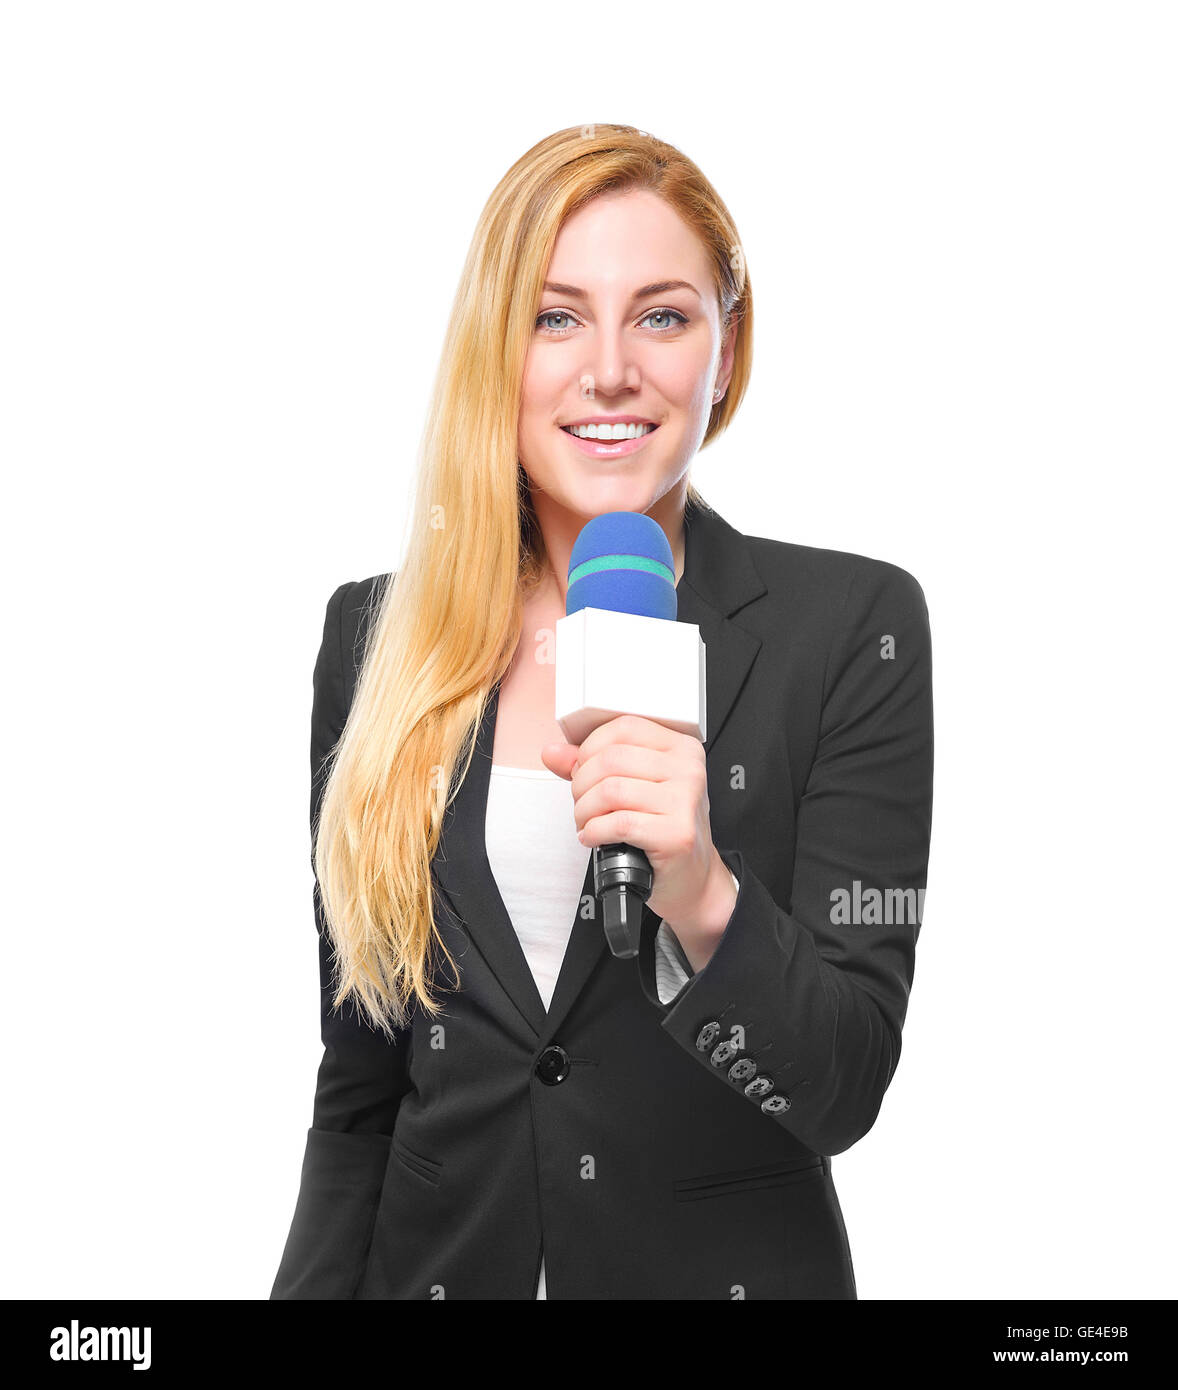 Attractive blonde présentatrice TV tenant un microphone. Isolé sur fond  blanc Photo Stock - Alamy